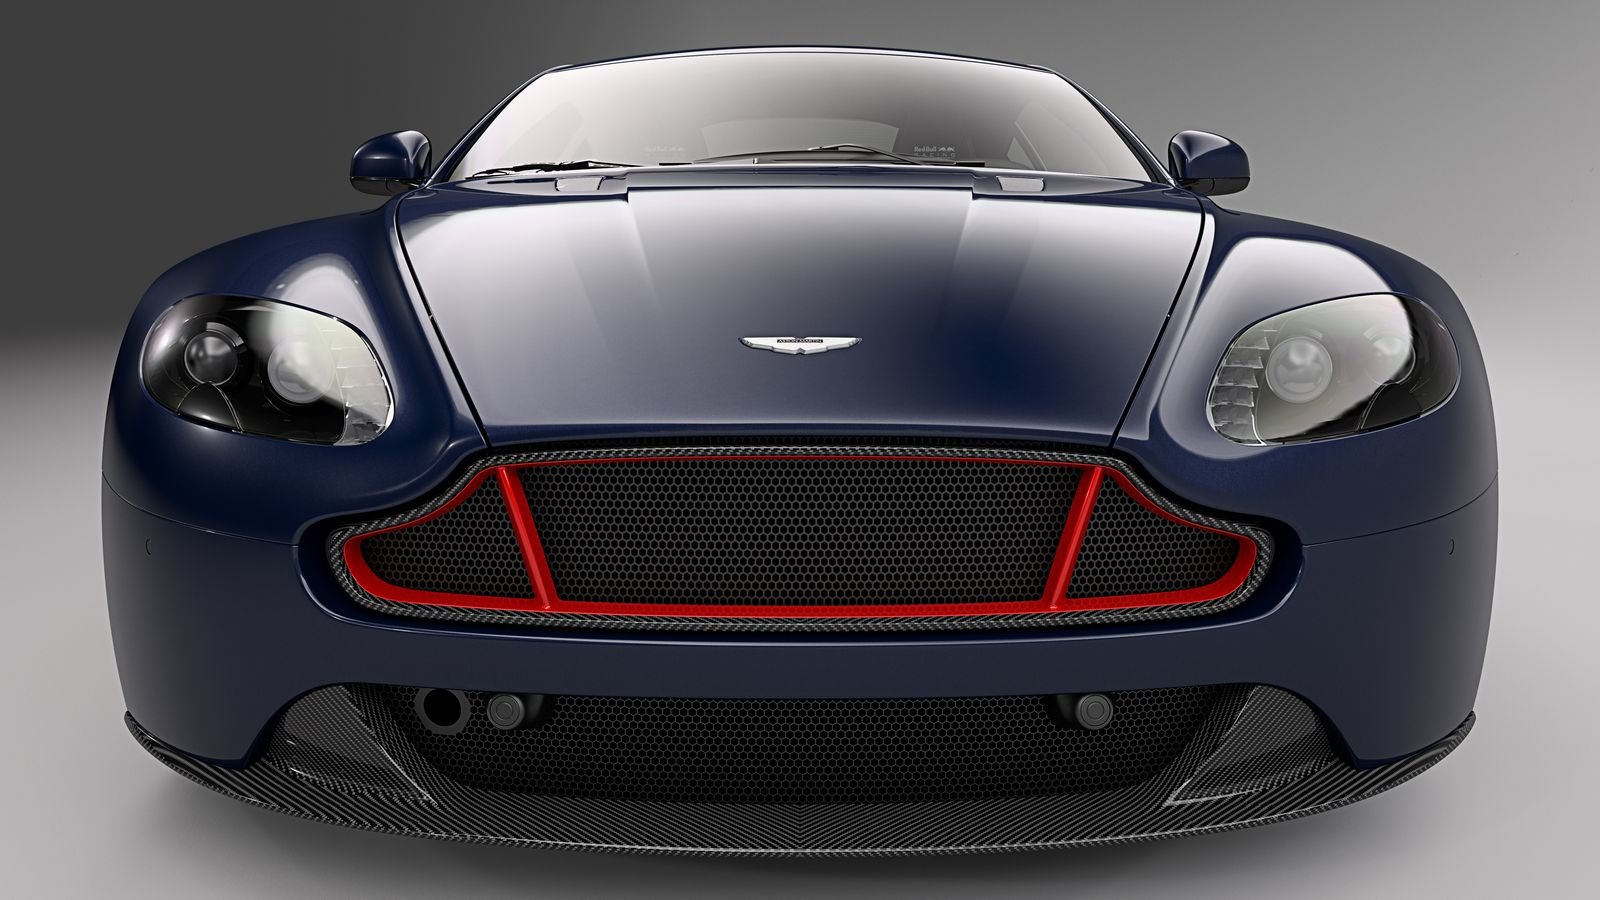 Aston Martin V8 ve speciální edici Red Bull Racing